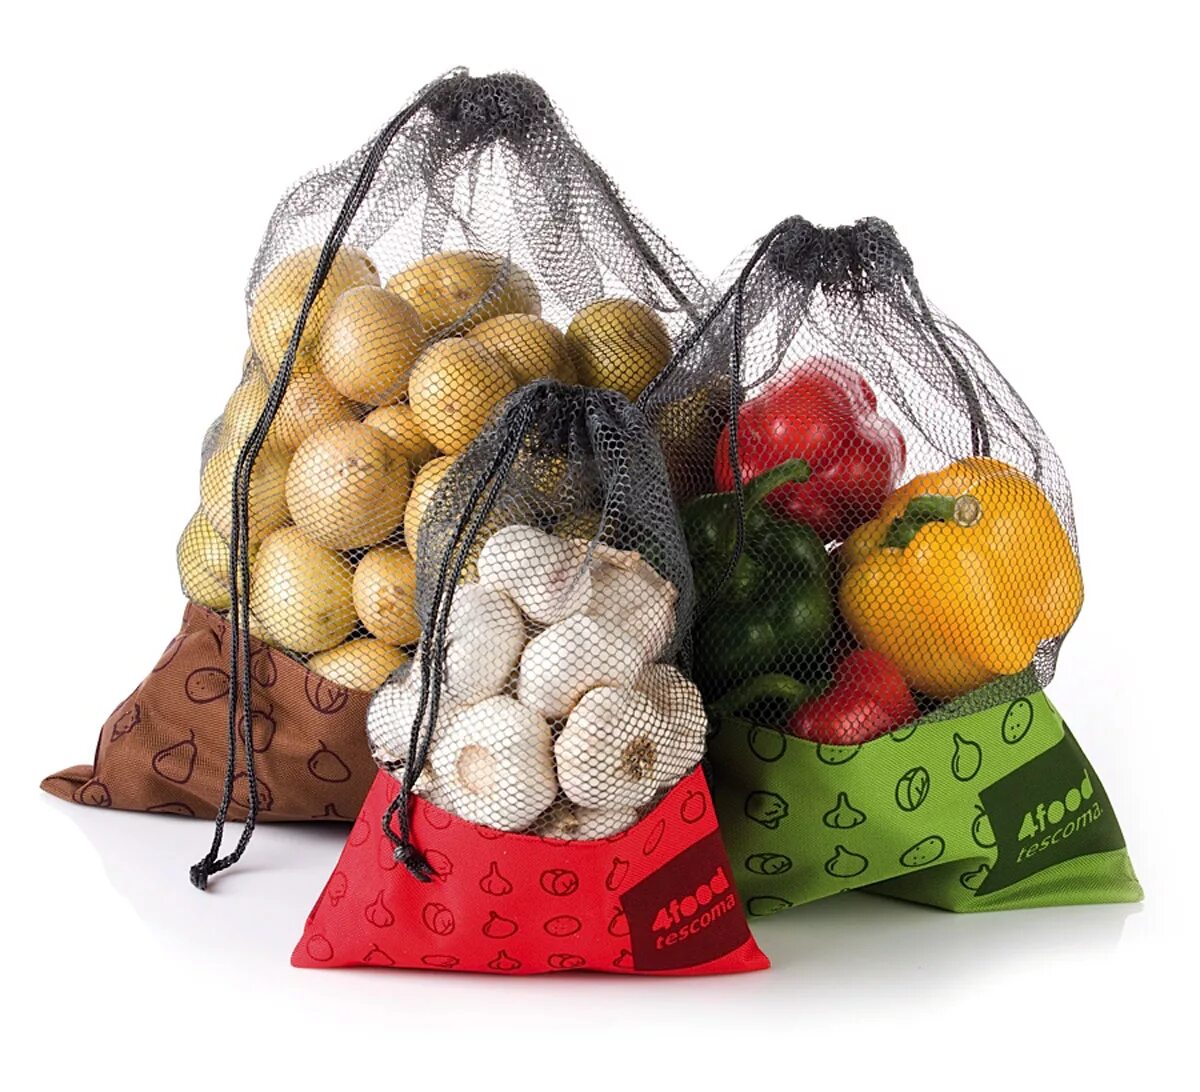 Купить упаковку для продуктов. Упаковка овощей. Сетка мешок для хранения овощей. Сетка для упаковки овощей. Пакет сетка для продуктов.